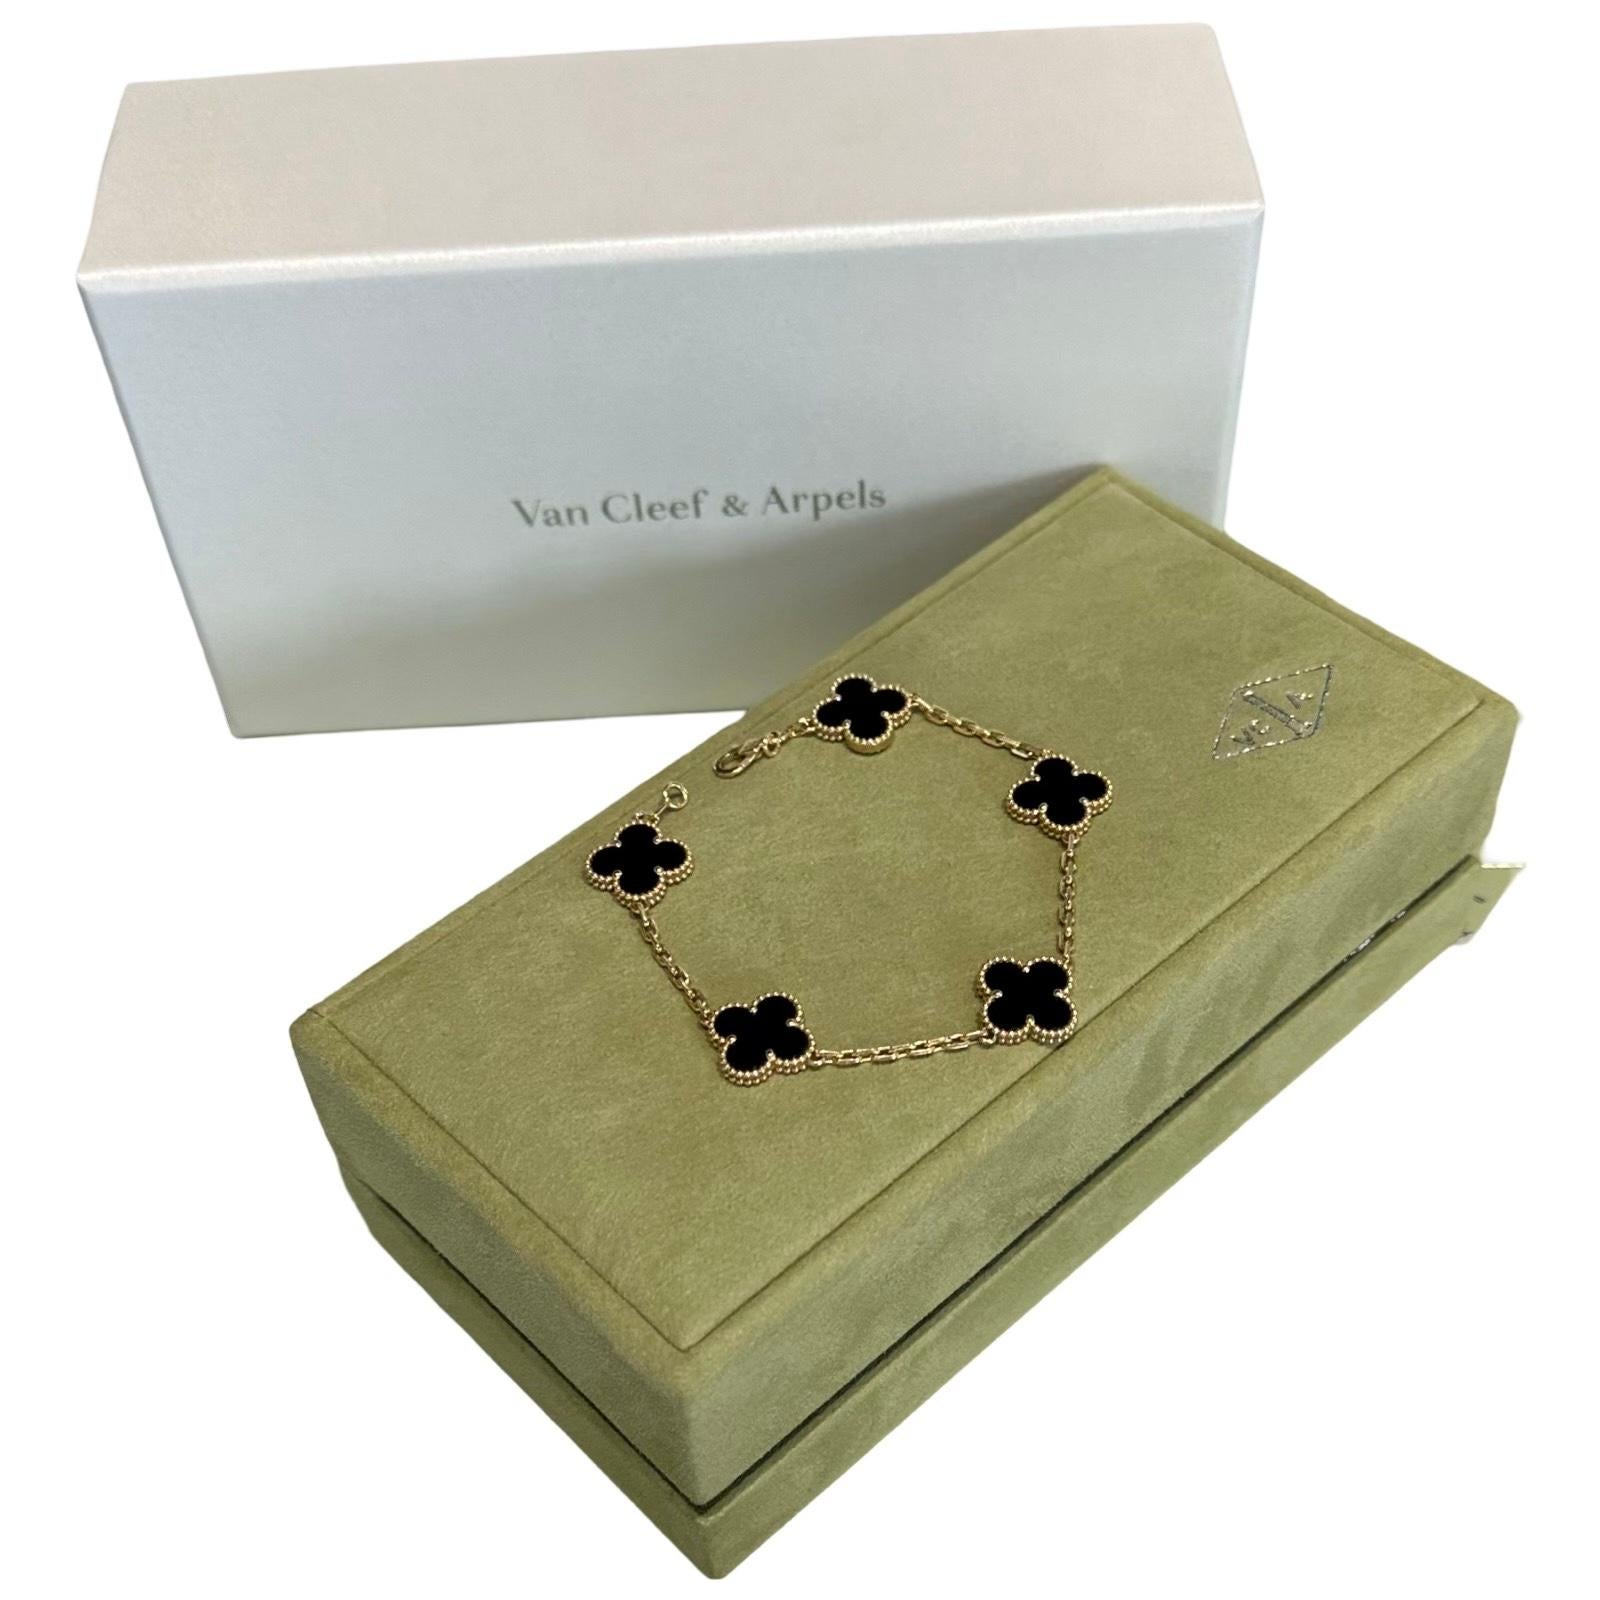 Marque : Van Cleef & Arpels

Modèle : Bracelet Vintage Alhambra

Pierre : Onyx

Métal : Or jaune 18k

Comprend : Boîte VCA
                Certificat d'authenticité VCA